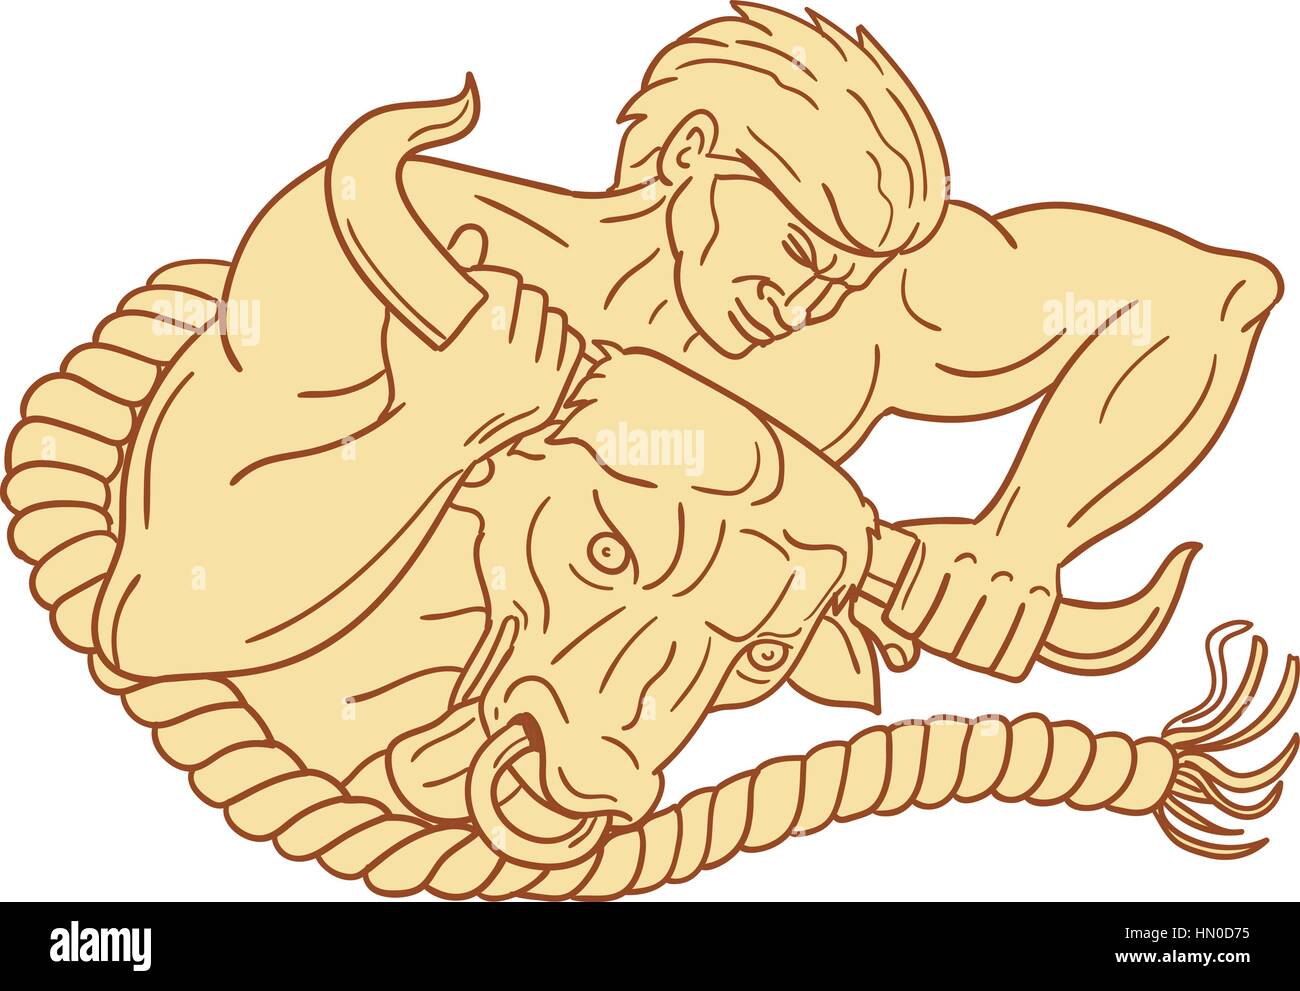 Croquis dessin illustration de style d'un homme prenant taureau par les cornes liées avec une corde, vu de l'avant ensemble isolées sur fond blanc. Illustration de Vecteur